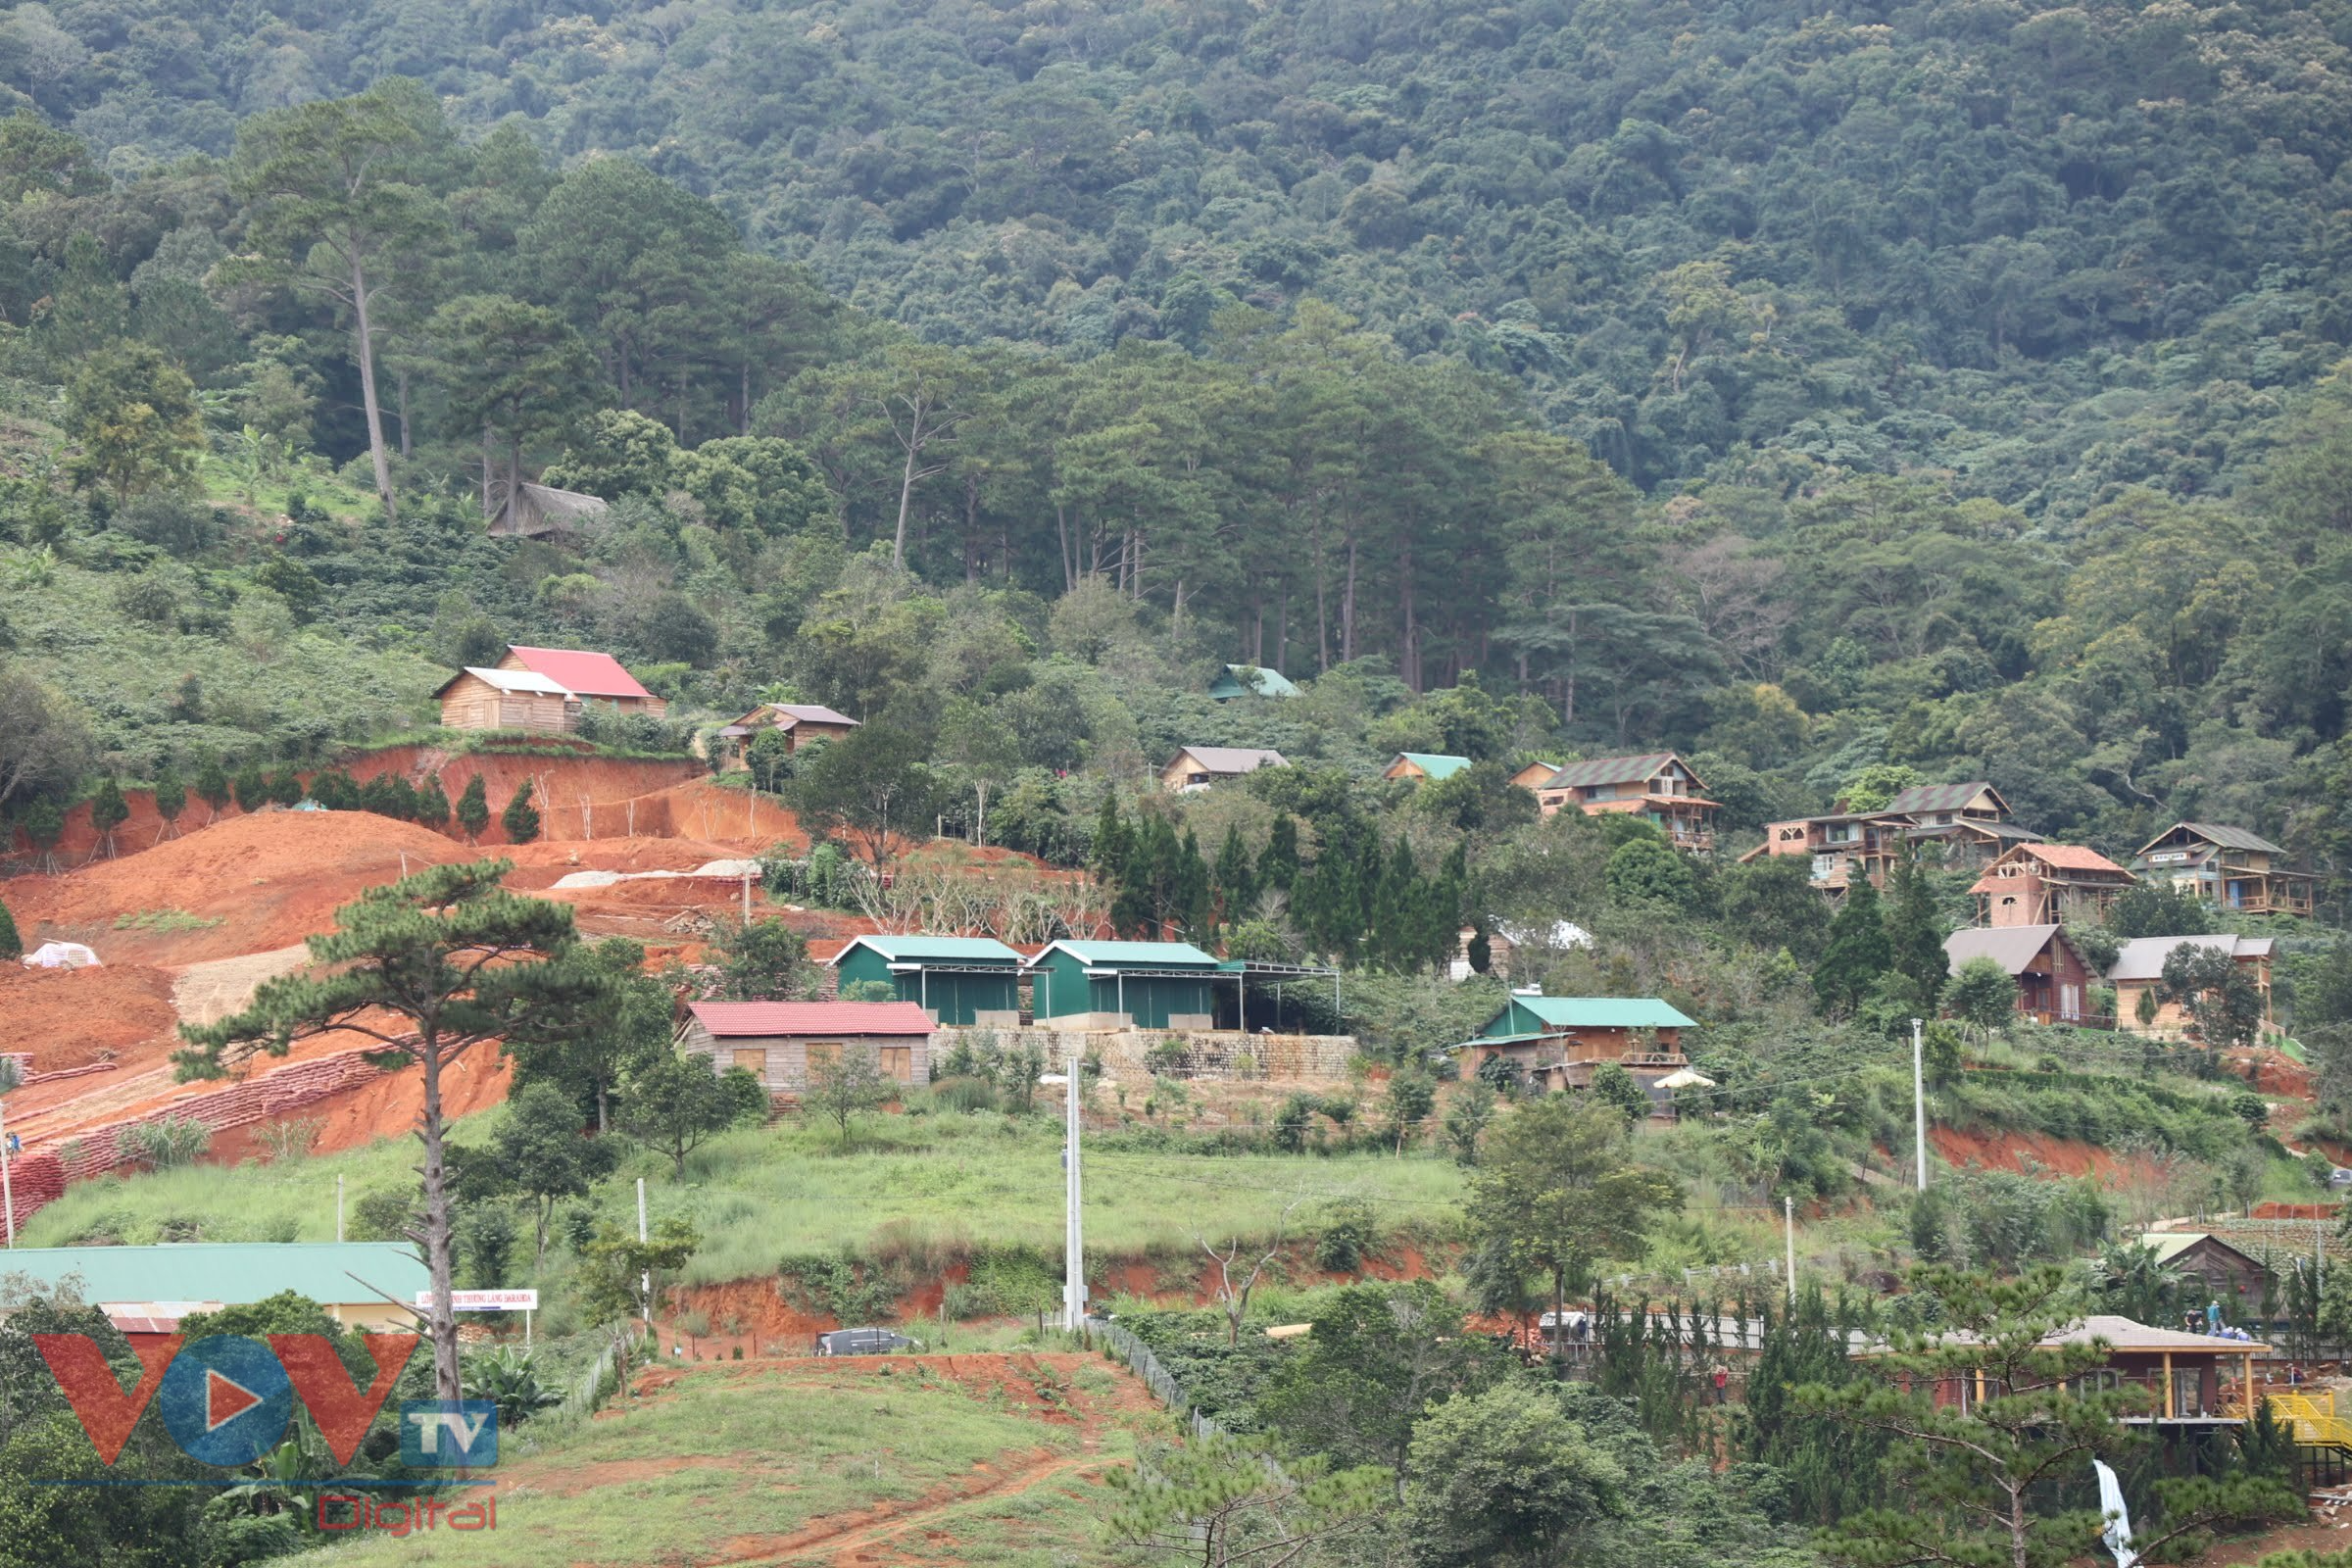 ảnh 1. làng biệt thự xây dựng trái phép dưới chân núi Voi, tại tiểu khu 268, xã Hiệp An, huyện Đức Trọng, tỉnh Lâm Đồng.jpg